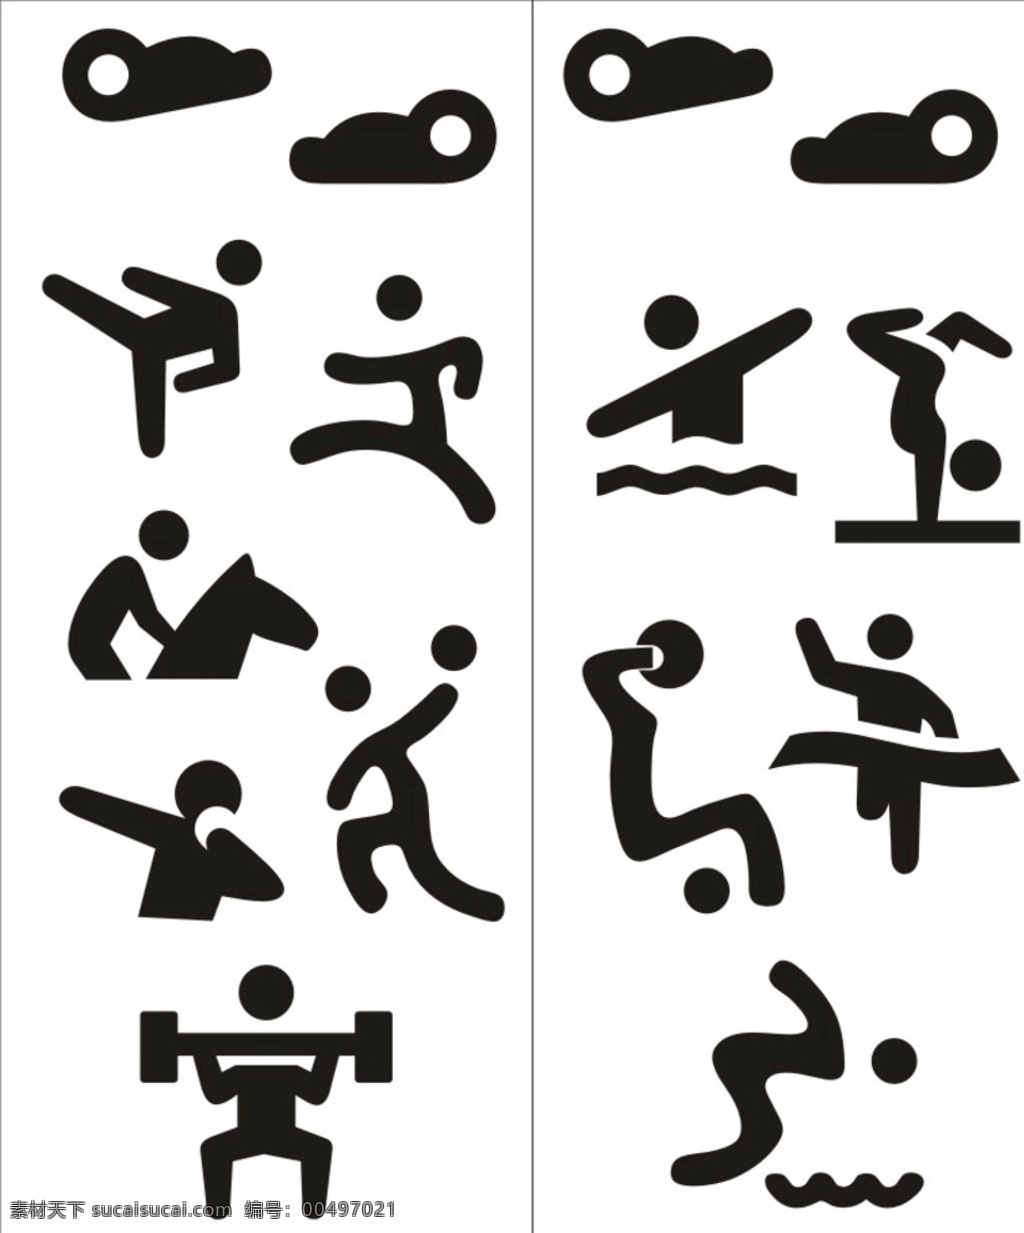 攀岩图图片 攀岩图 小人图 运动标 手把图 健康标 标志图标 其他图标